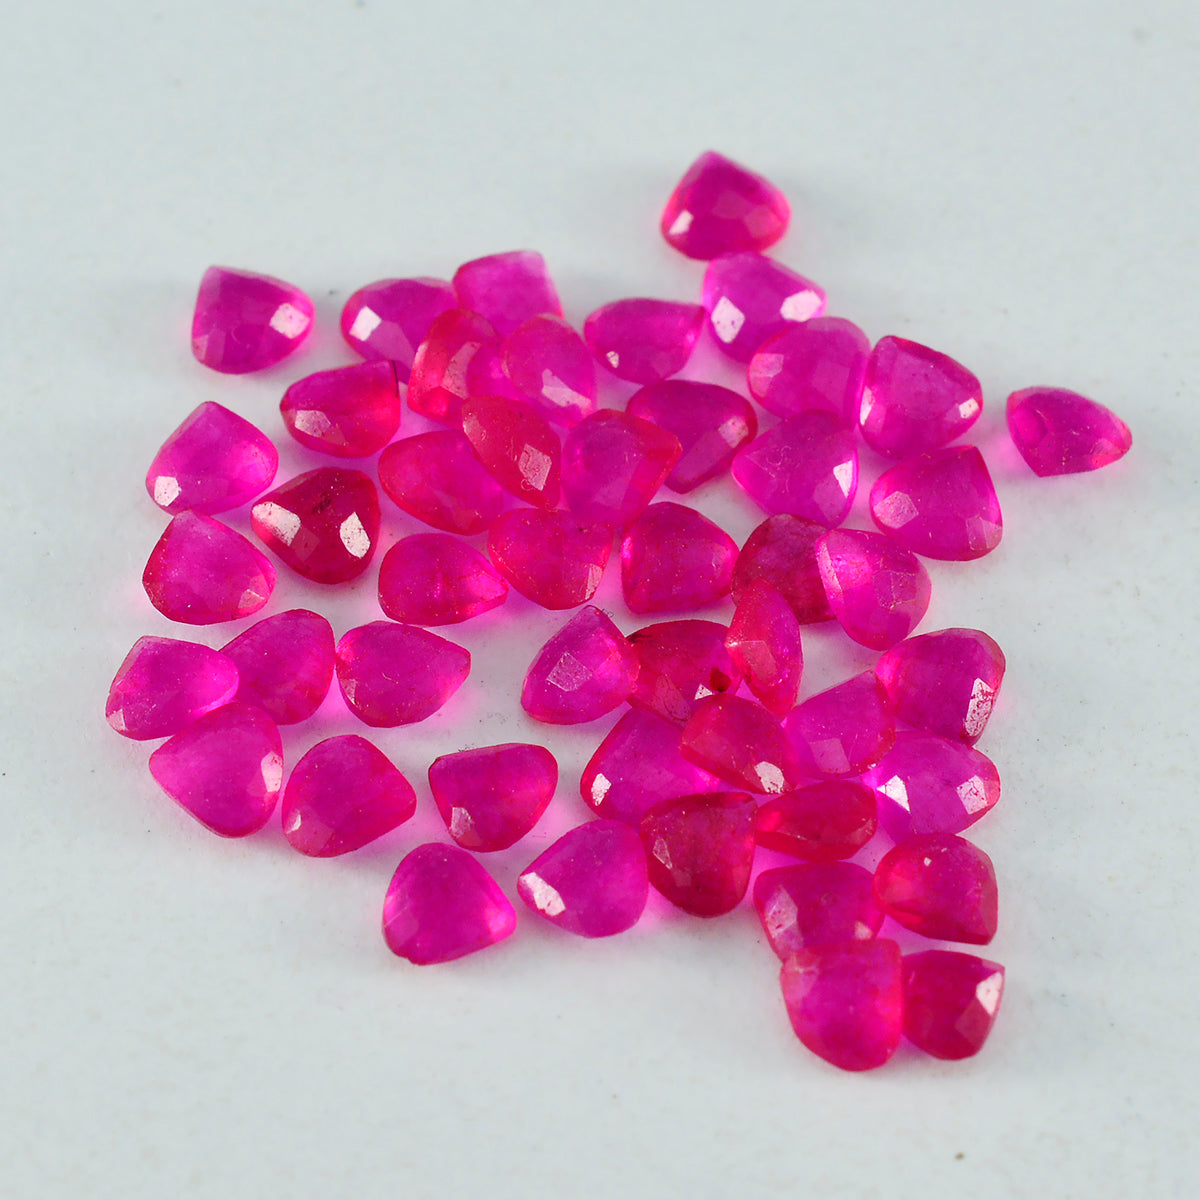 Riyogems 1 Stück natürlicher roter Jaspis, facettiert, 4 x 4 mm, Herzform, schön aussehende Qualitäts-Edelsteine